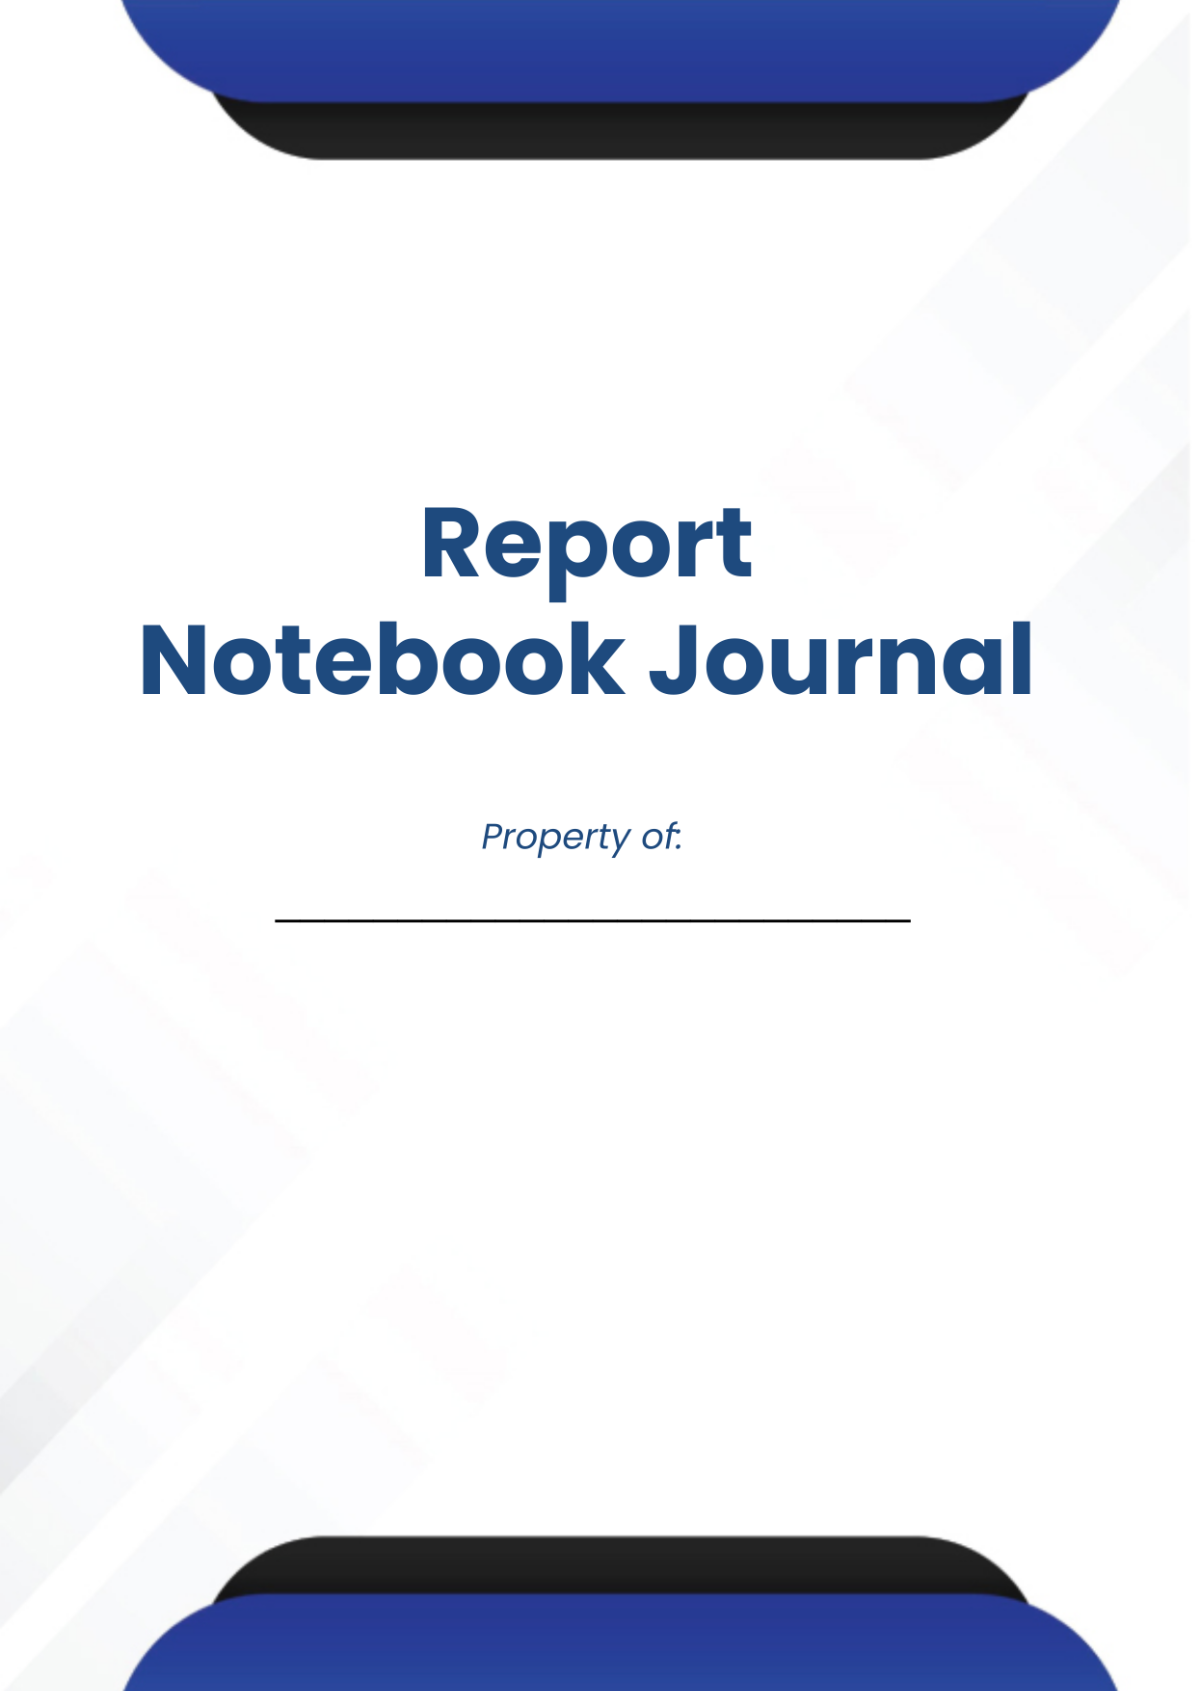 Report Notebook Journals